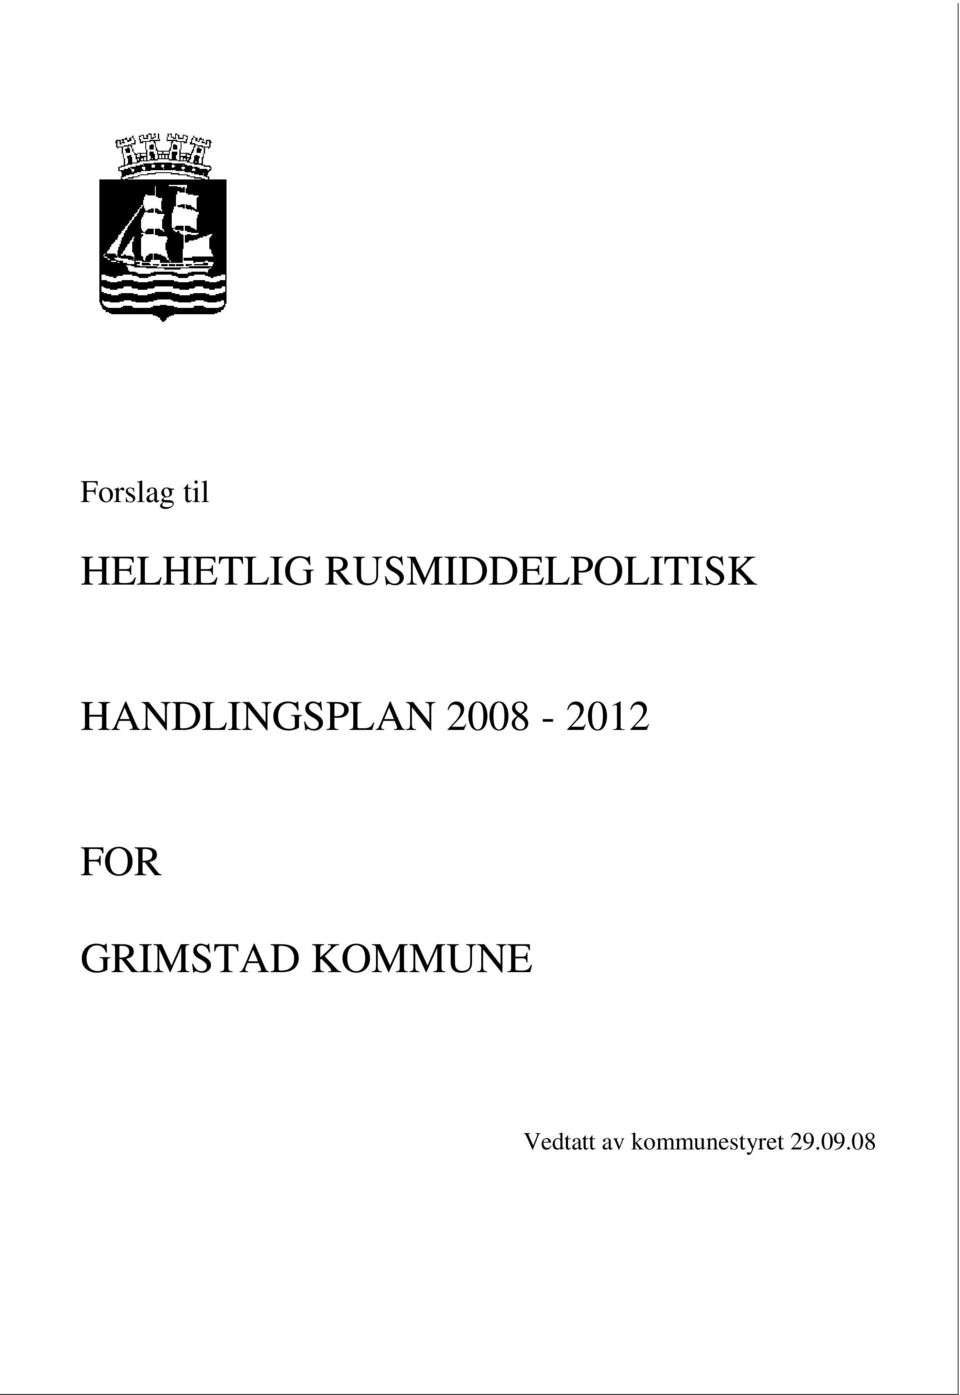 HANDLINGSPLAN 2008-2012 FOR